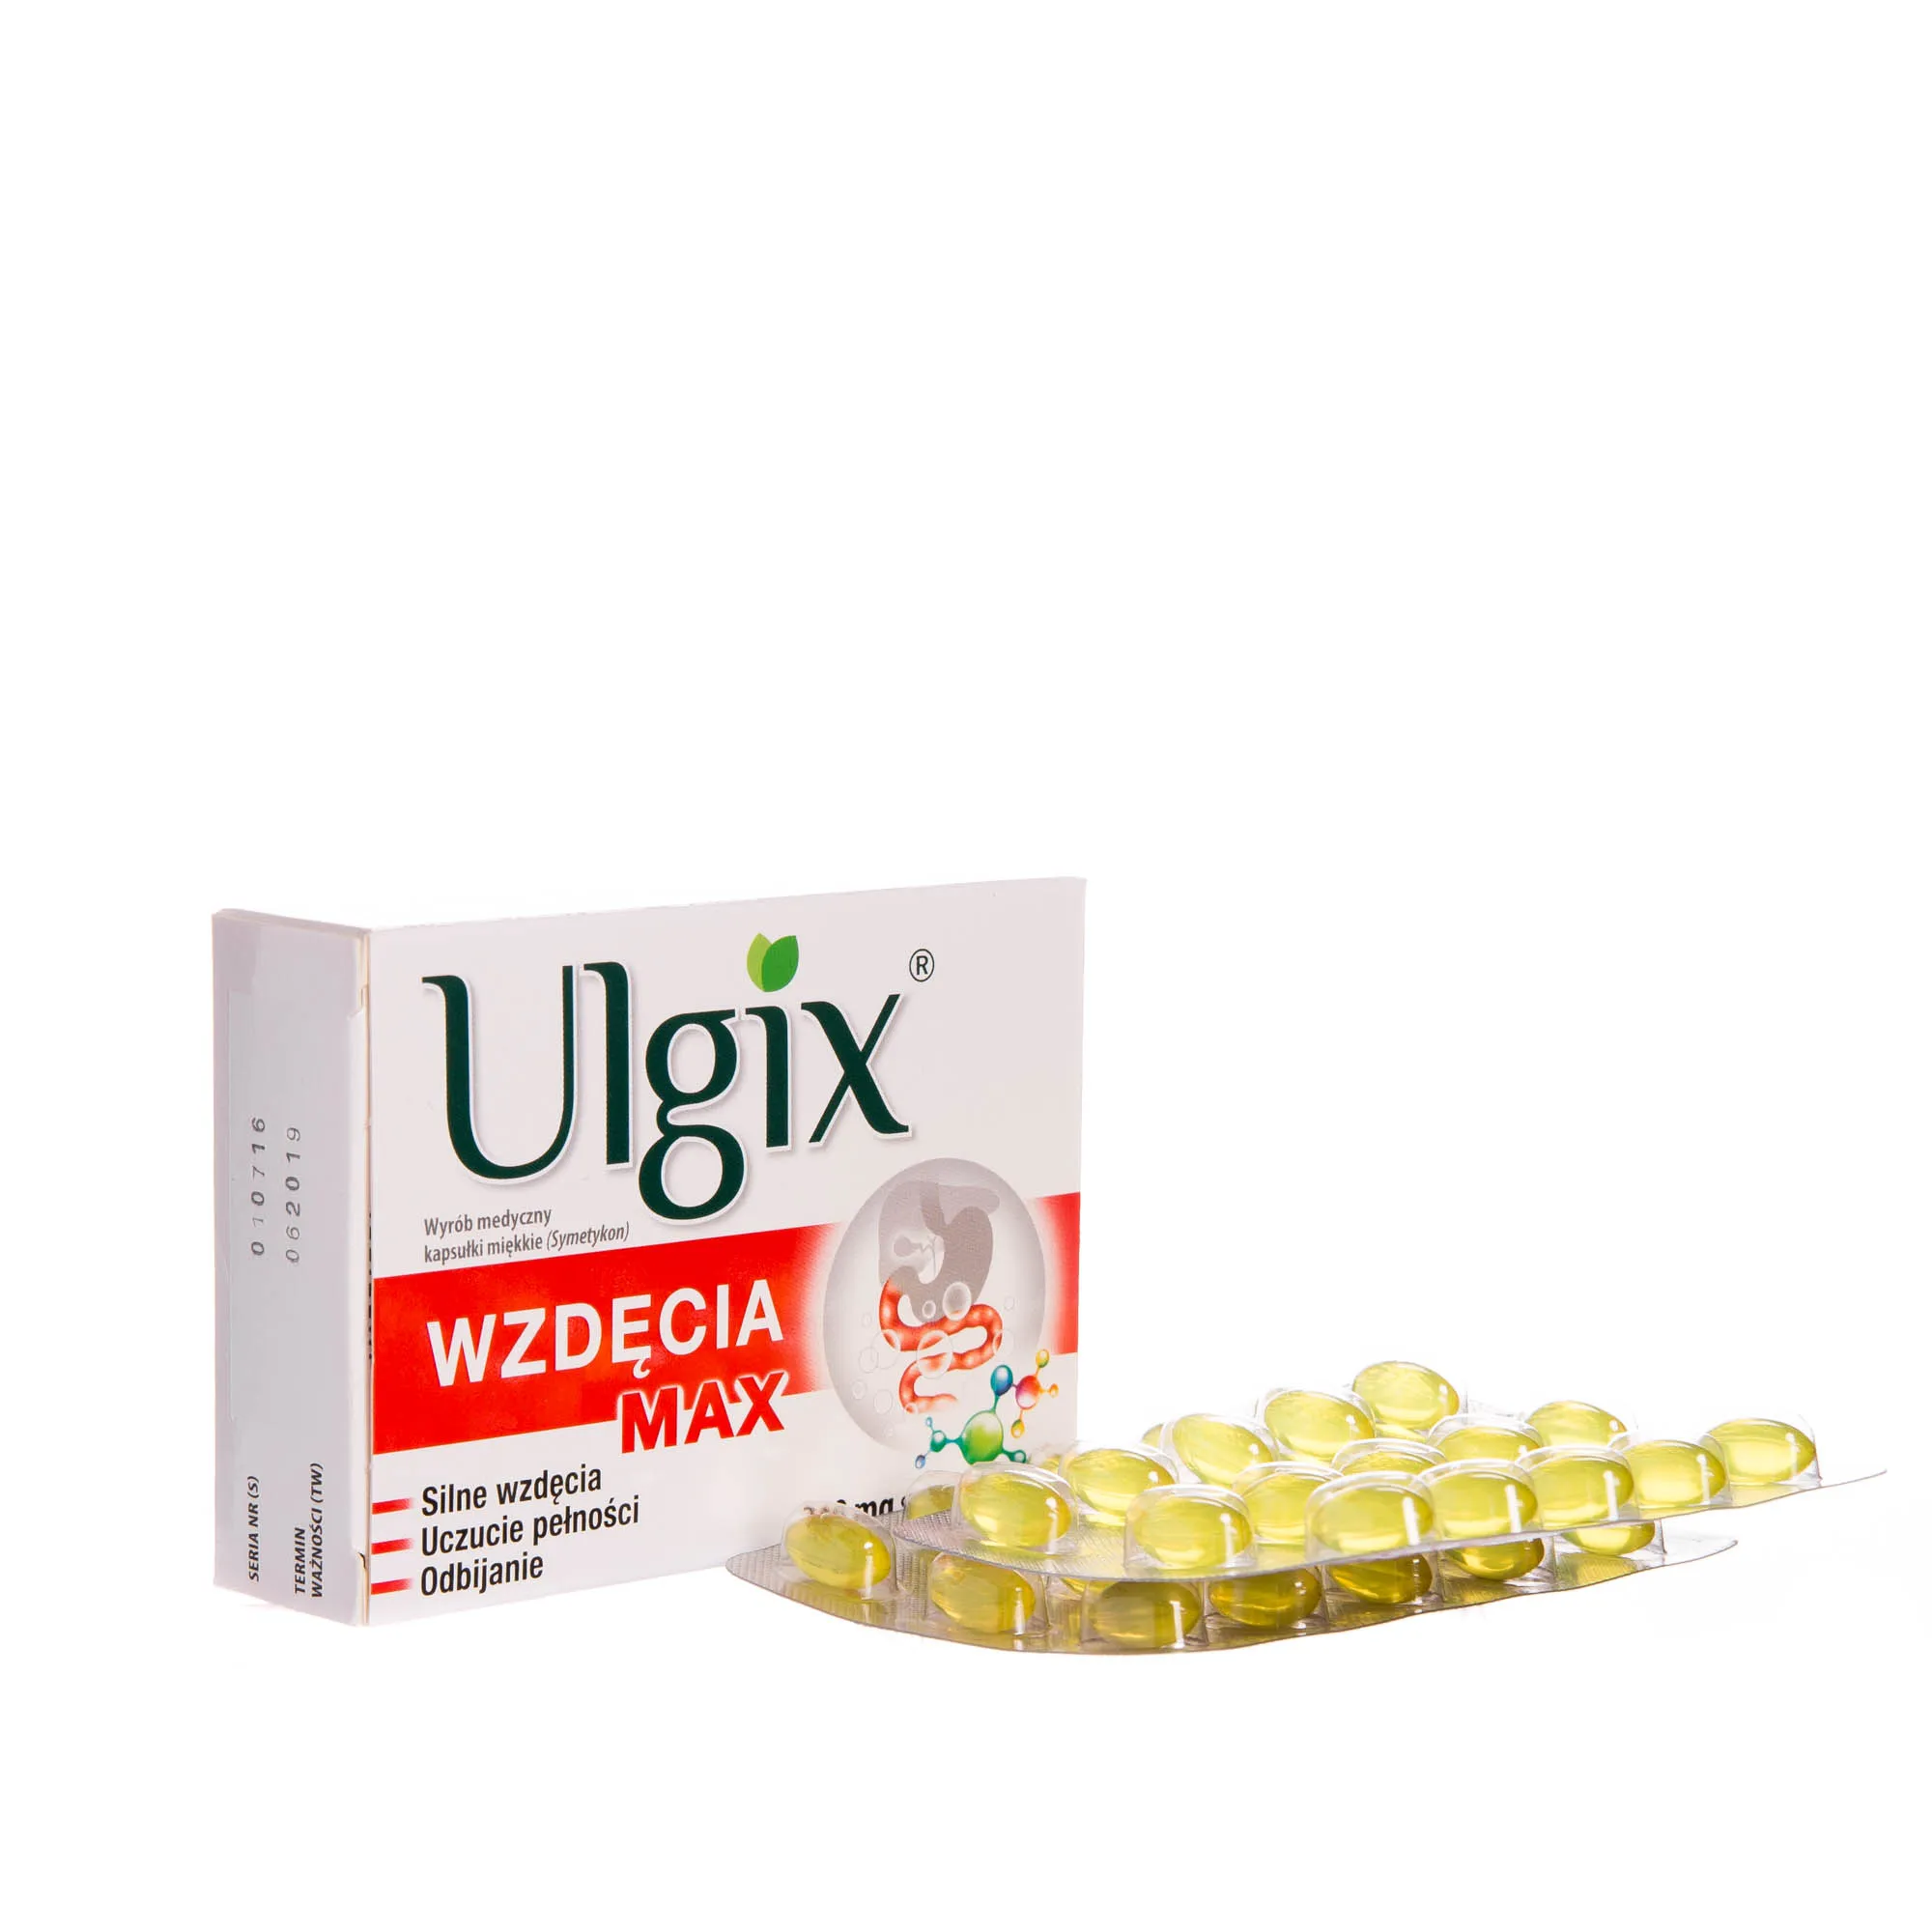 Ulgix wzdęcia max, wyrób medyczny, ( 240 mg symetykonu ) , 30 kapsułek